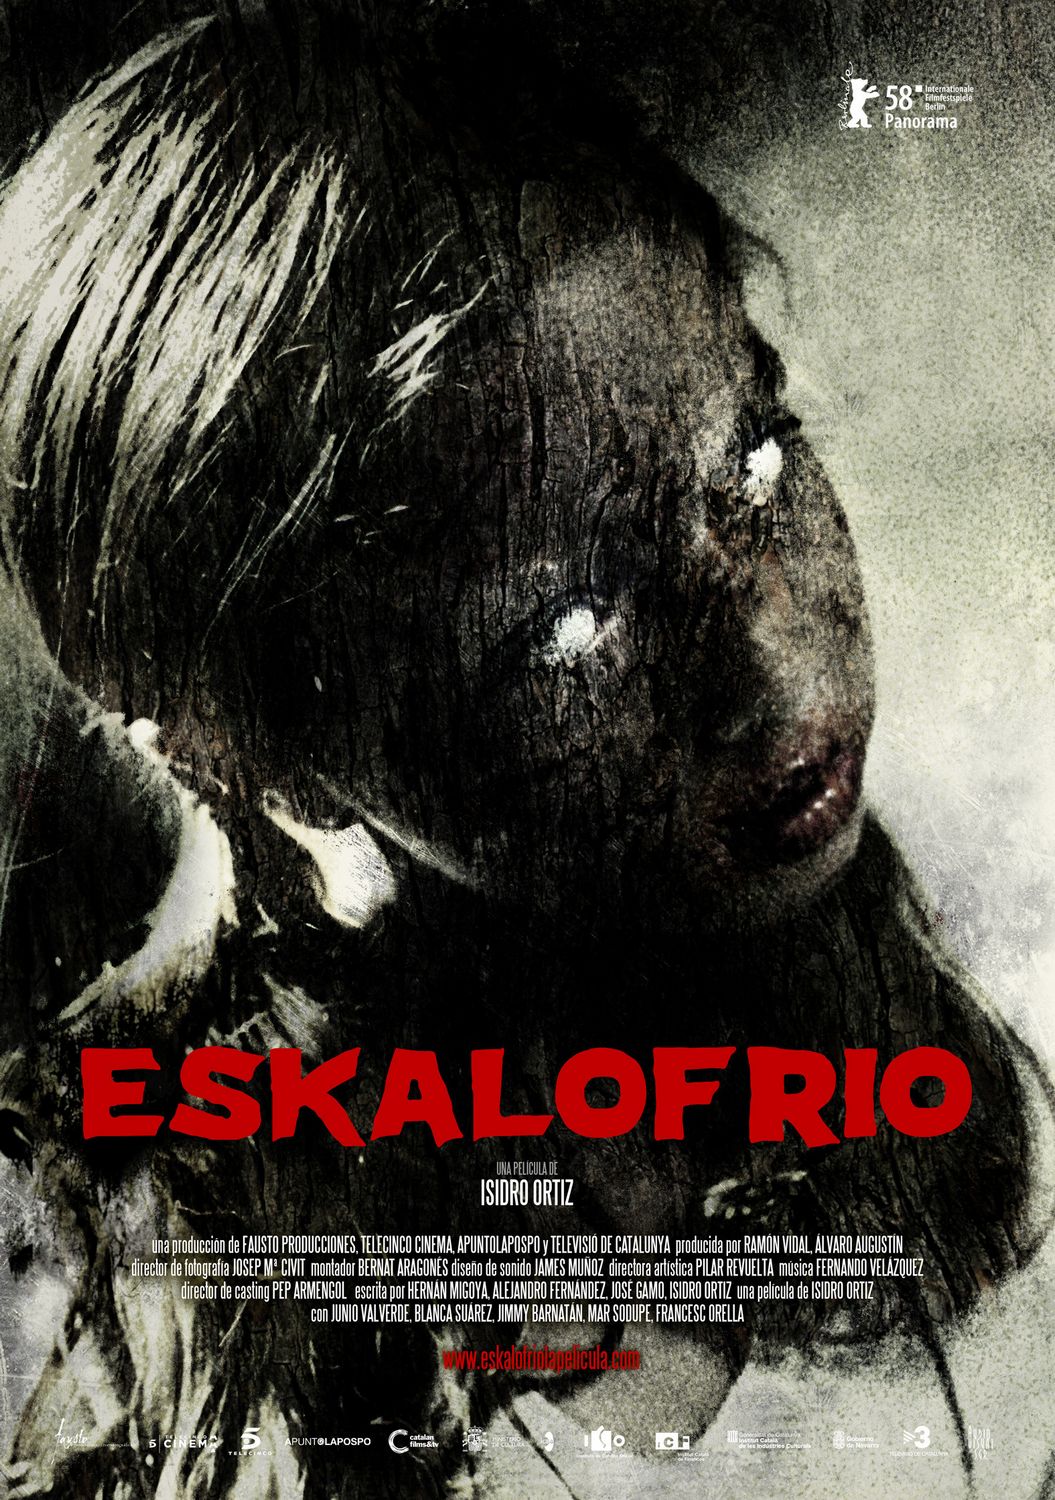 Extra Large Movie Poster Image for Eskalofrío 